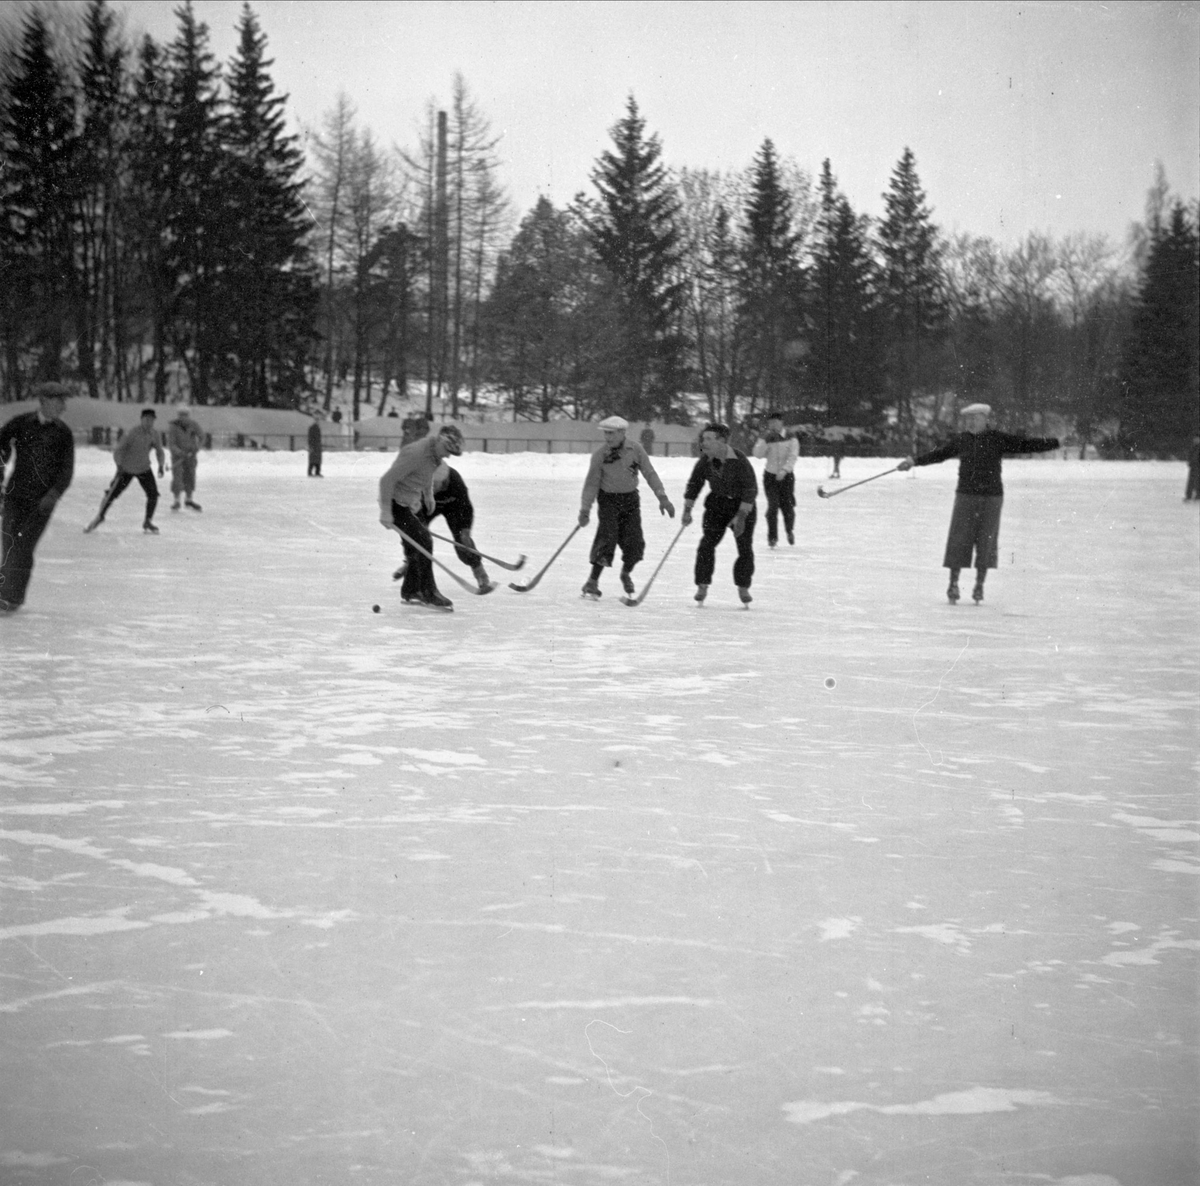 "Upsalas bandyveteraner visade utmärkt spel. Kamraterna segrade över Sirius i jubileumsmatchen", Studenternas Idrottsplats, Uppsala 1947